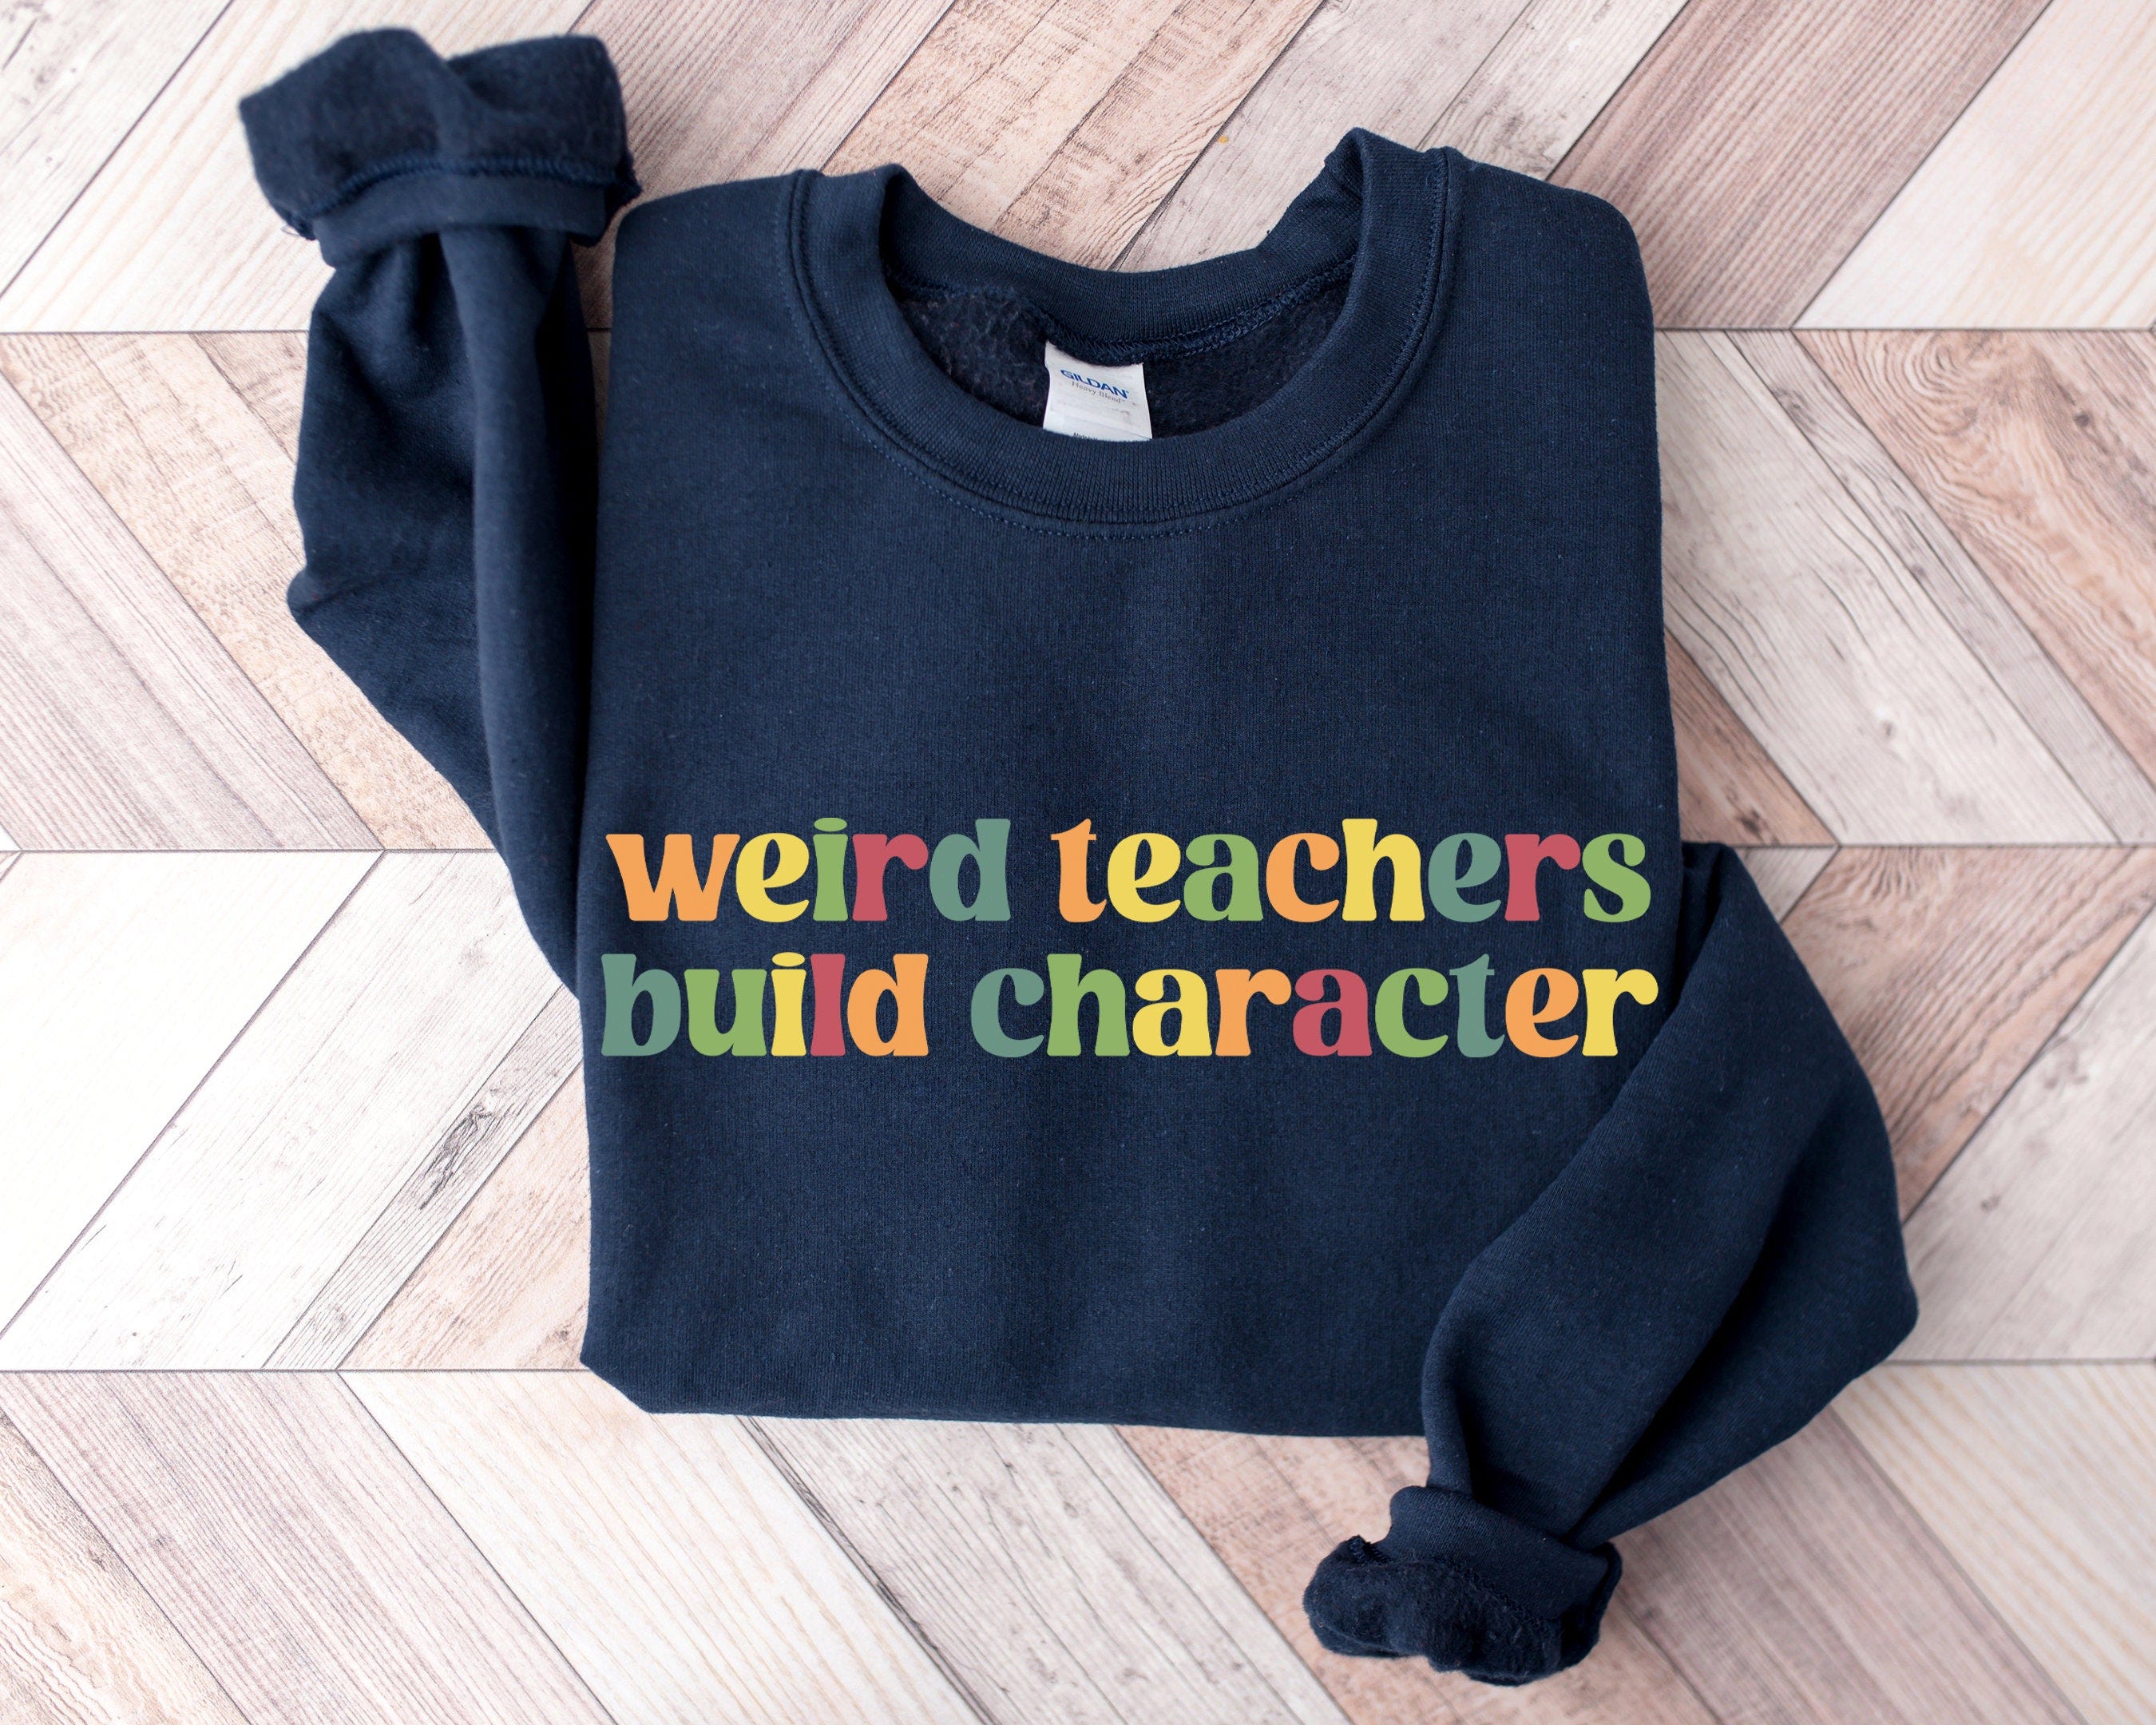 Weird Teachers Build Characters, Teacher Shirt, Teacher Gift, Funny Teacher Shirt, Teacher Appreciation, Back to School